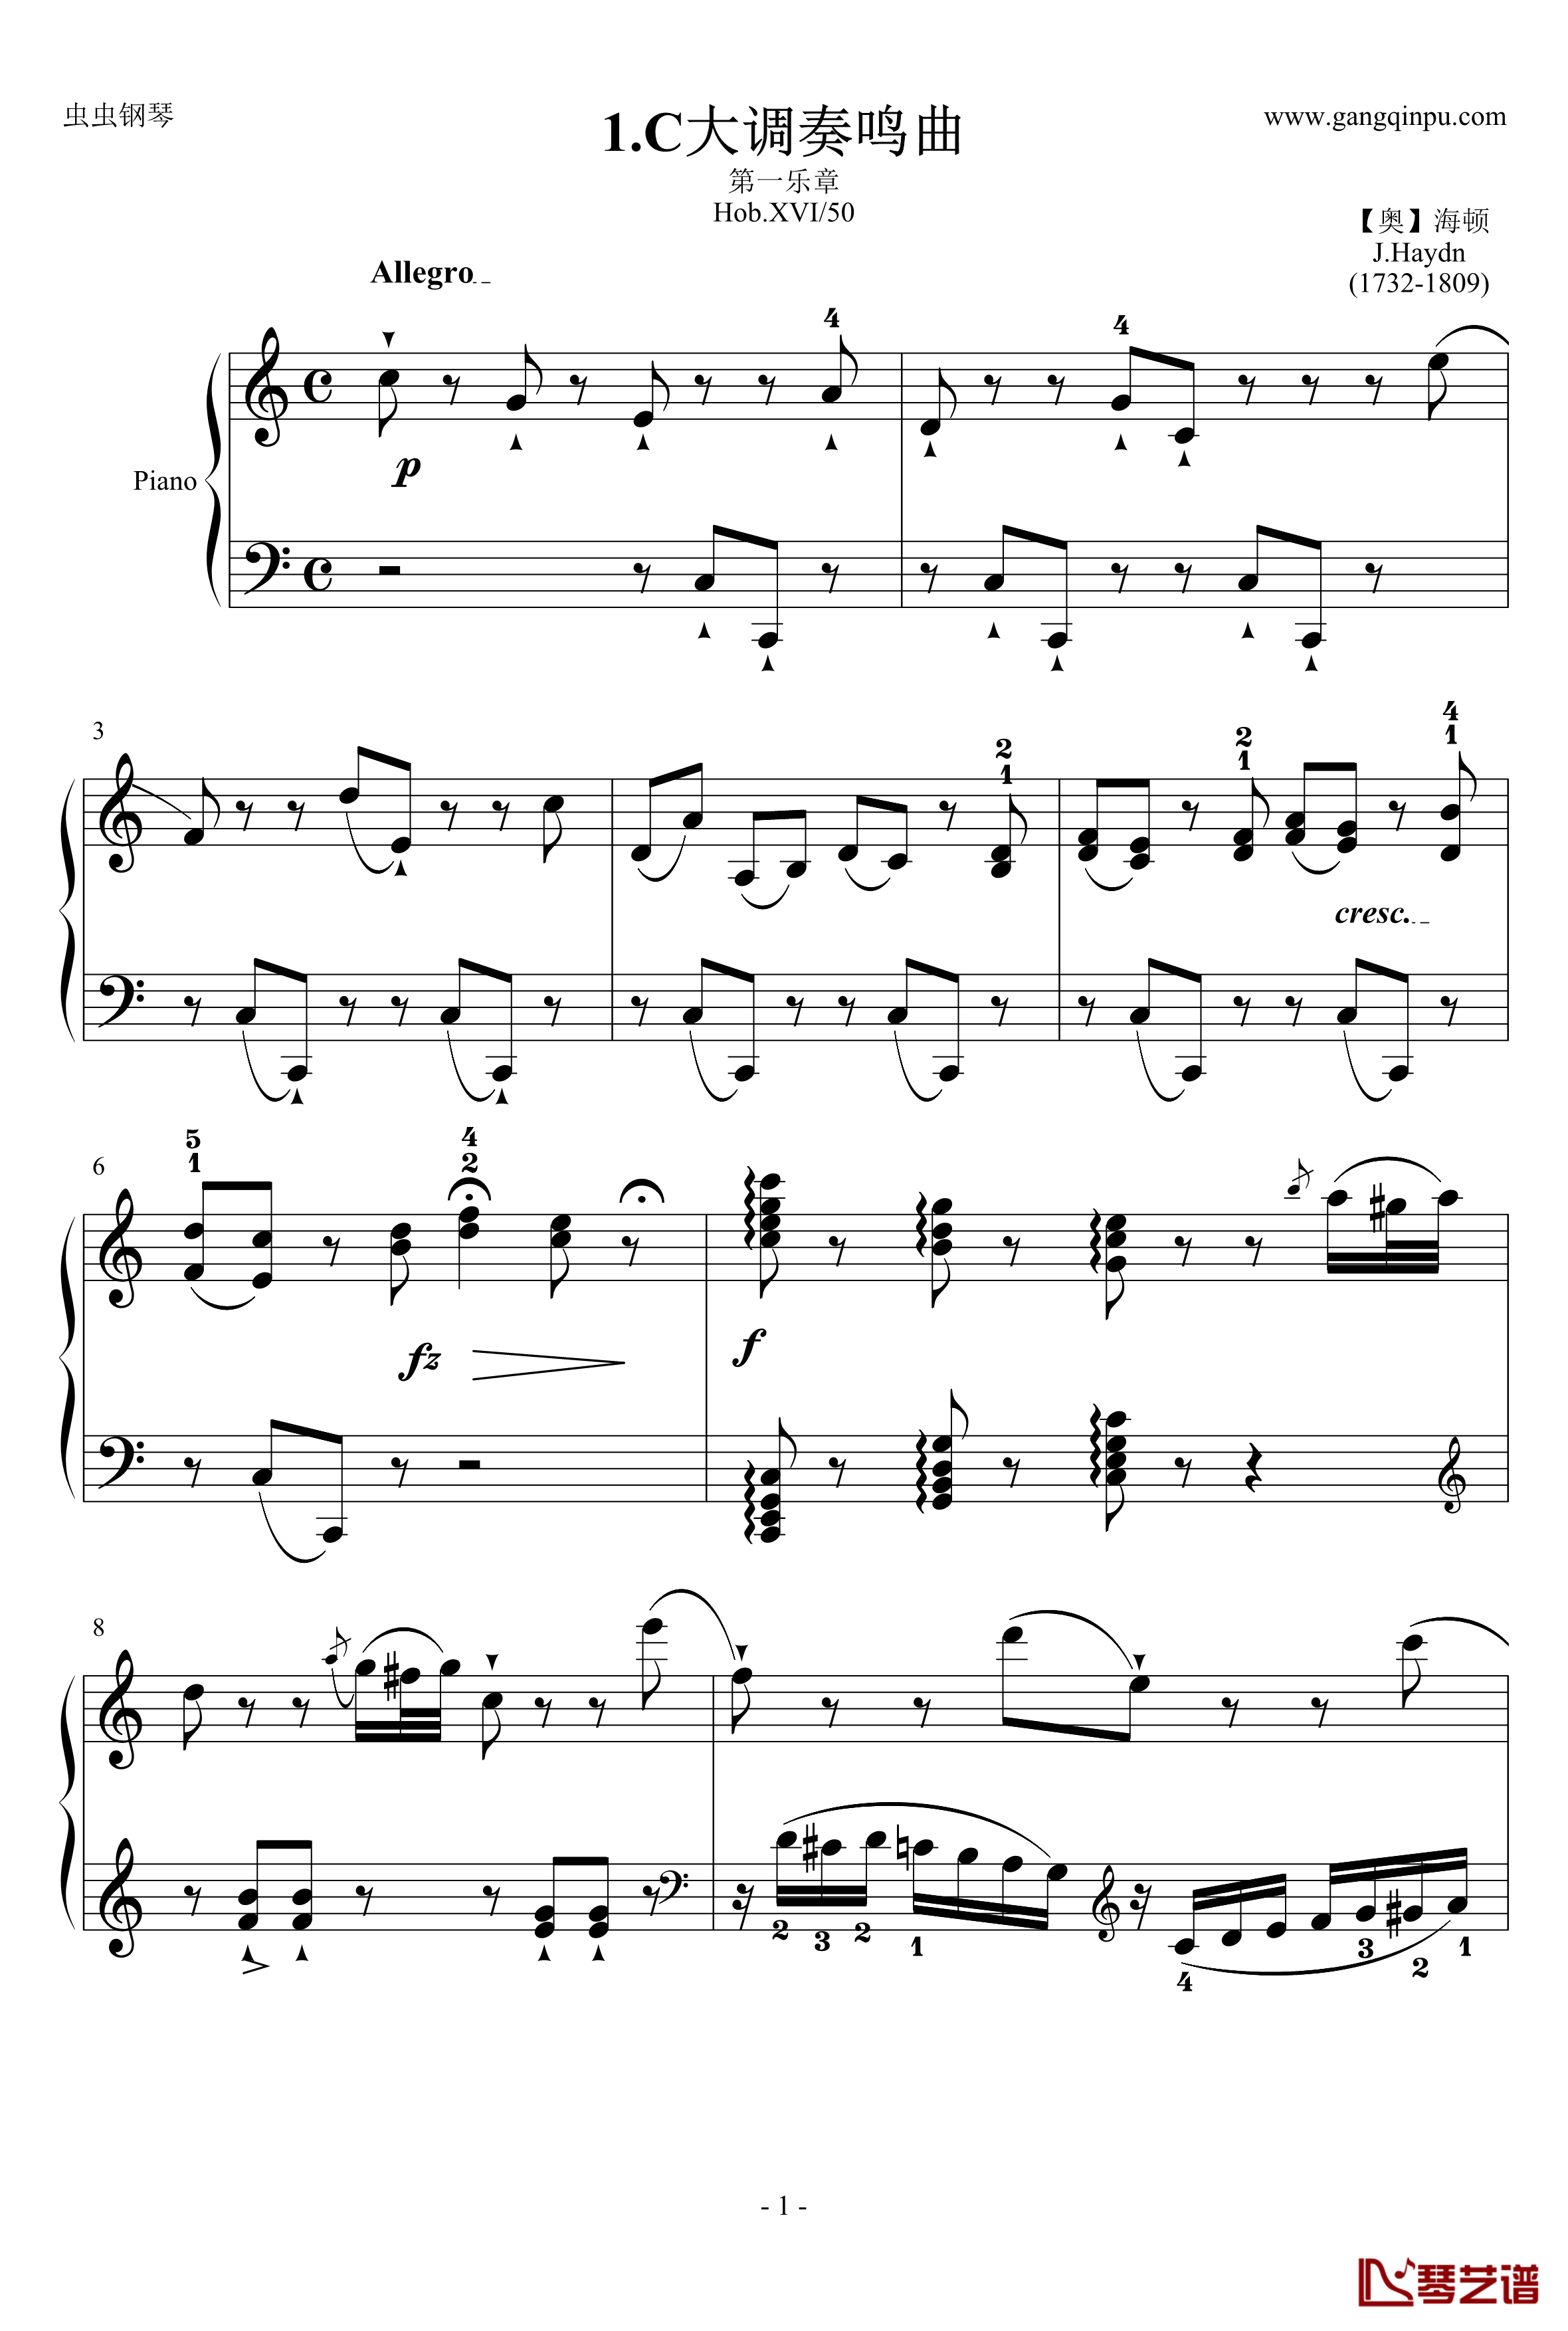 C大调奏鸣曲钢琴谱第一乐章-海顿1